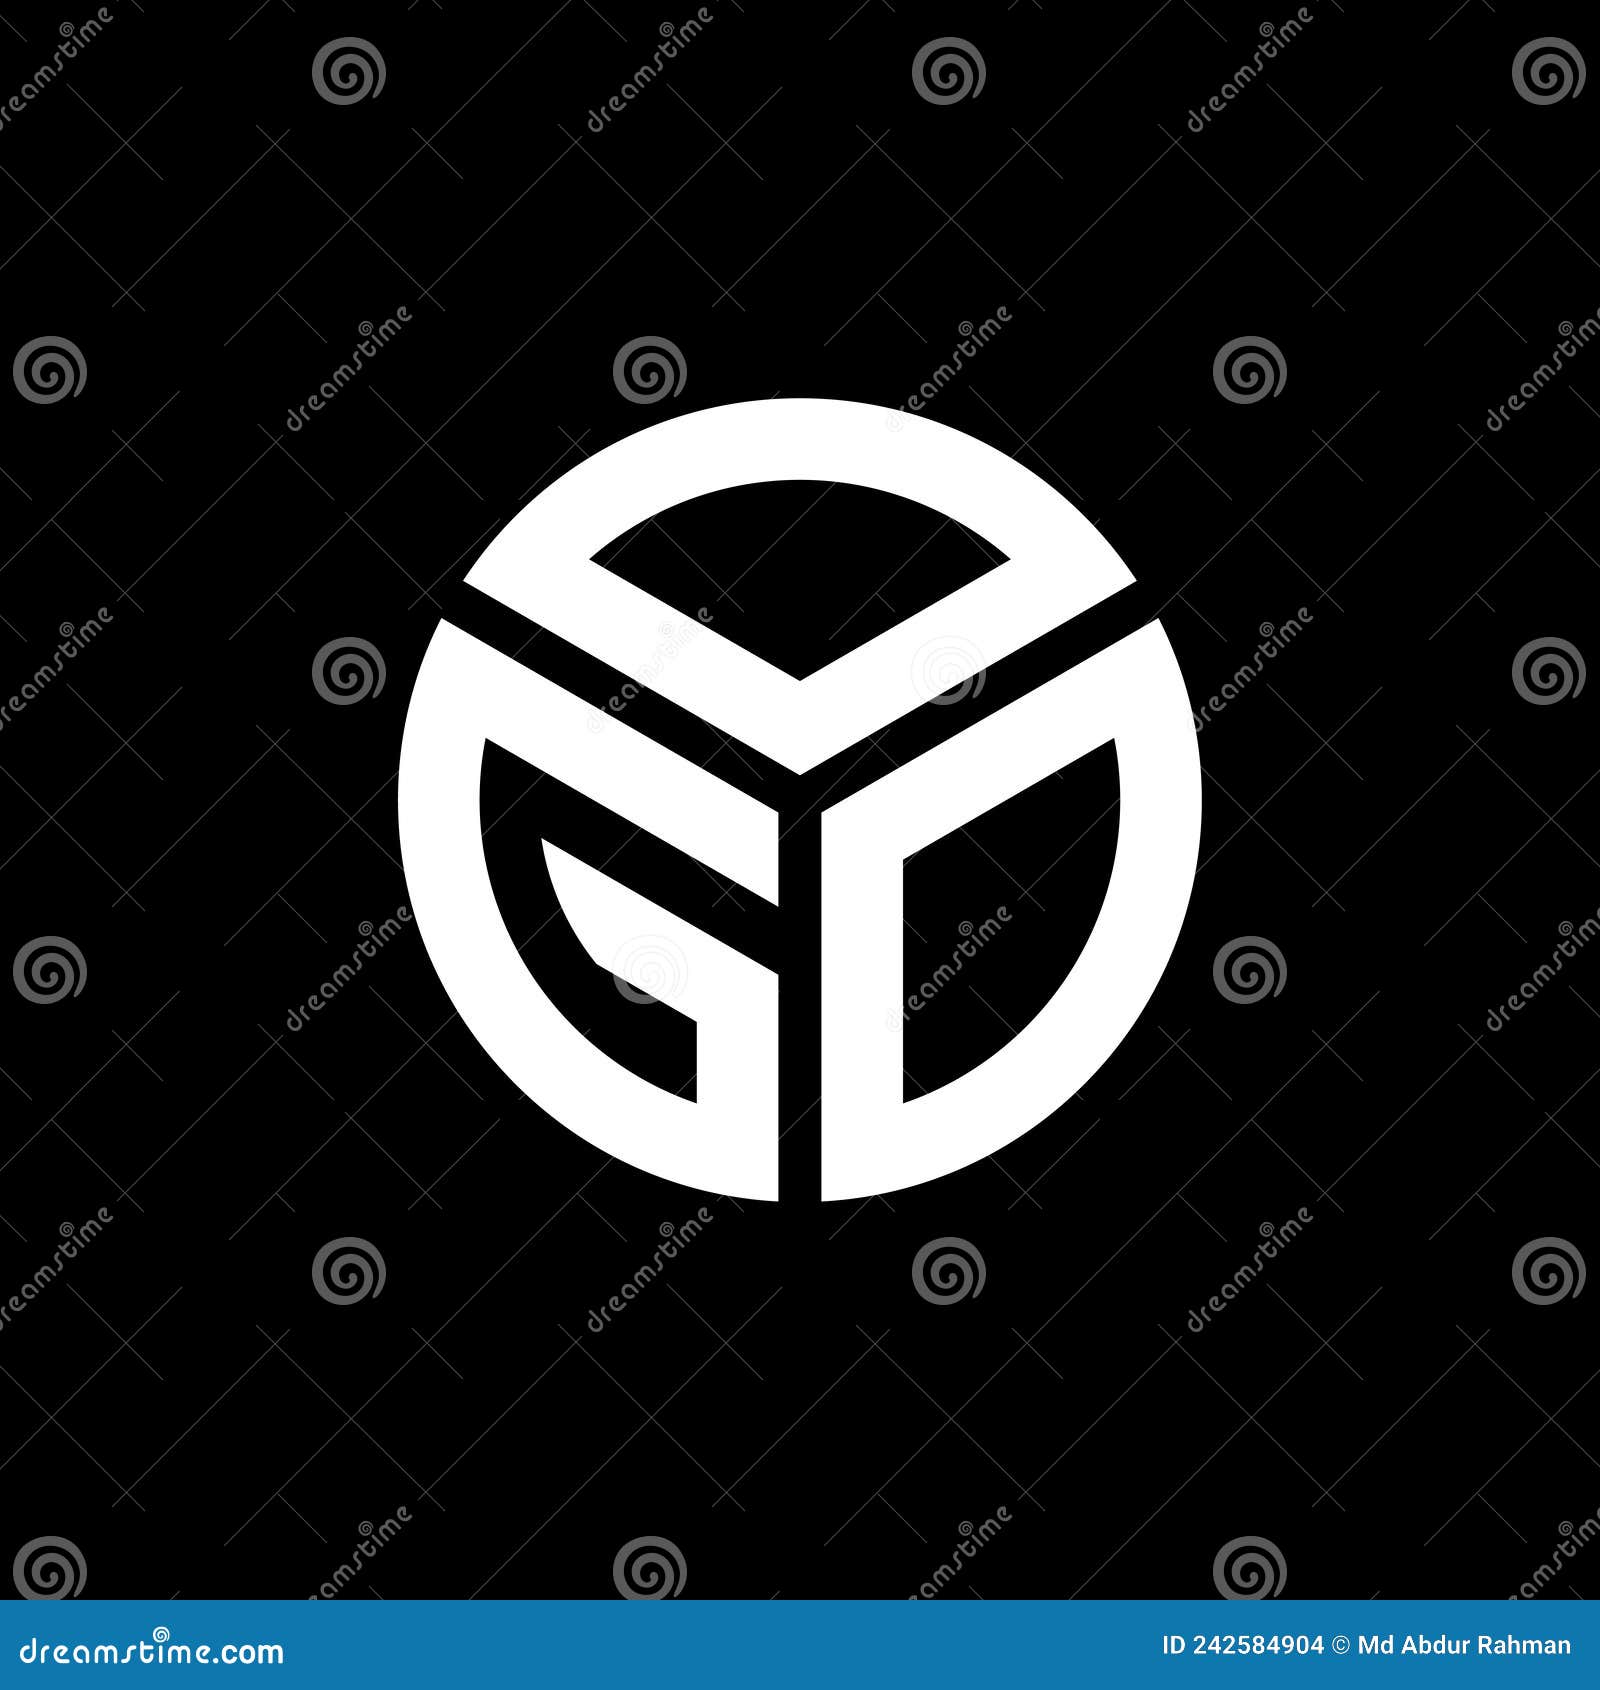 ogo letter logo  on black background. ogo creative initials letter logo concept. ogo letter 